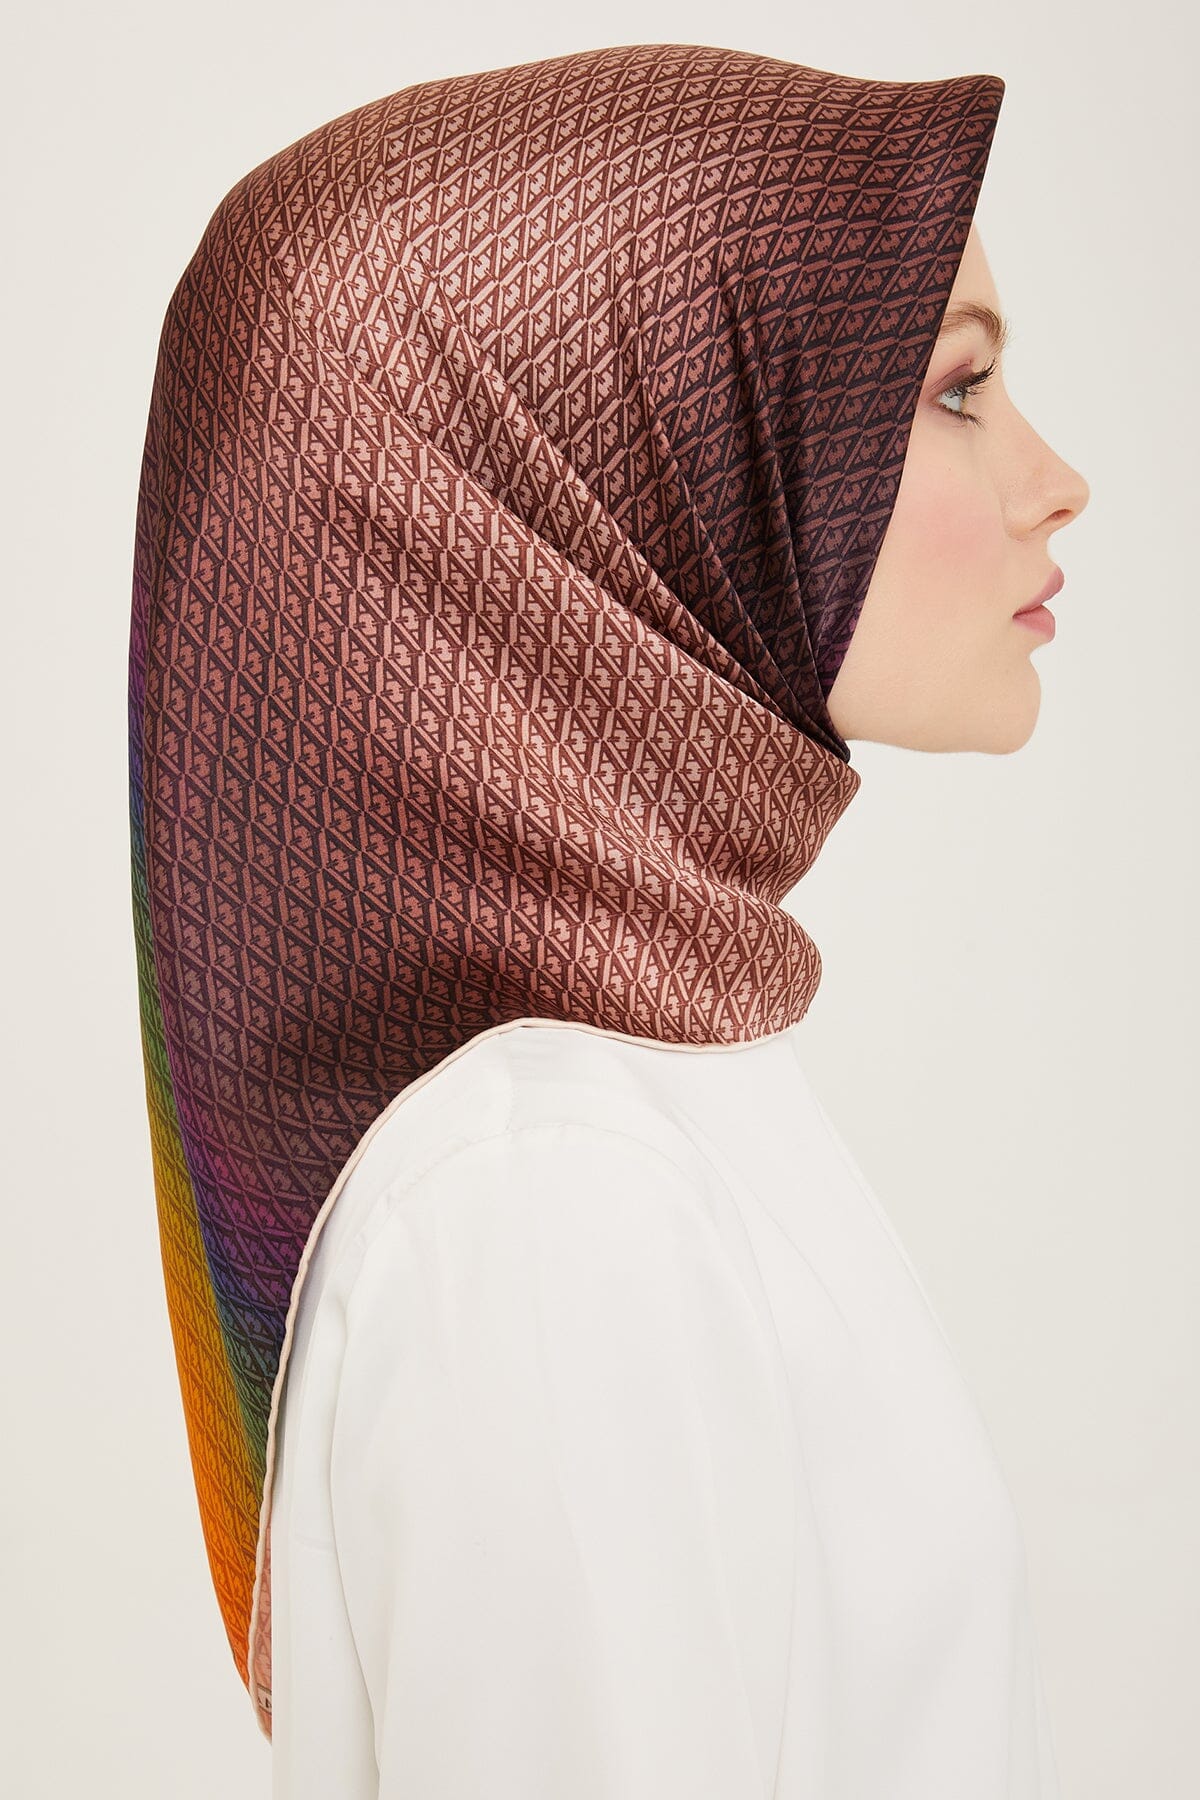 Armine Hathway Women Silk Scarf #21 Silk Hijabs,Armine Armine 